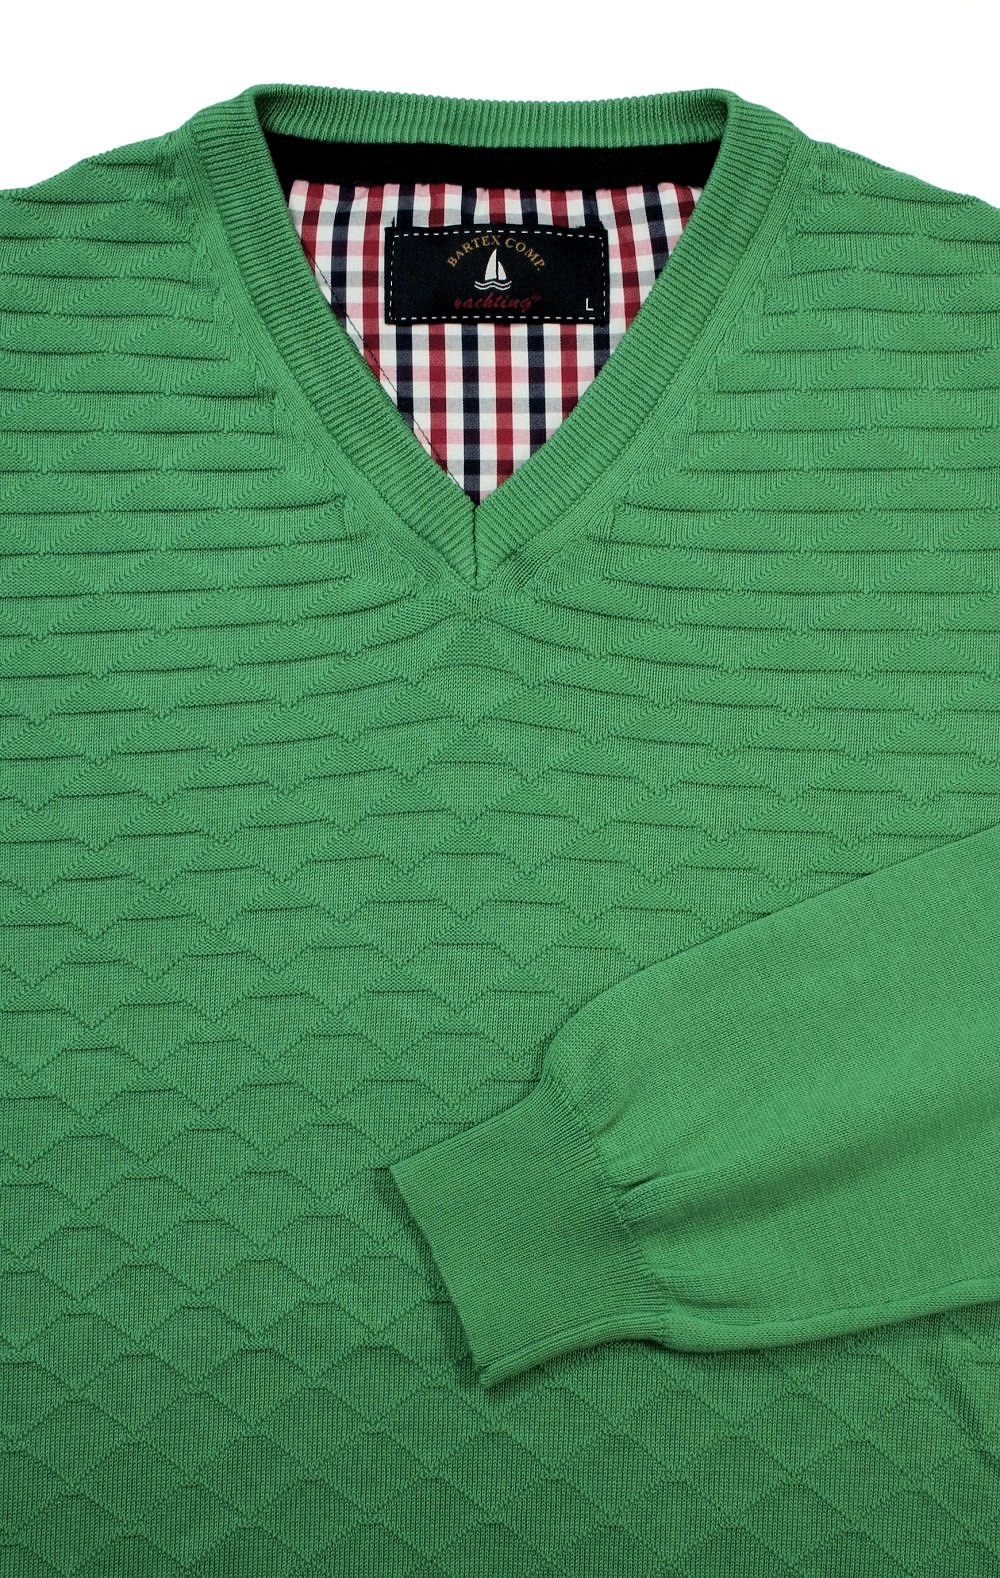 Sweter Zielony w Serek, Bawełniany, Tłoczony Wzór, V-neck, Męski -BARTEX